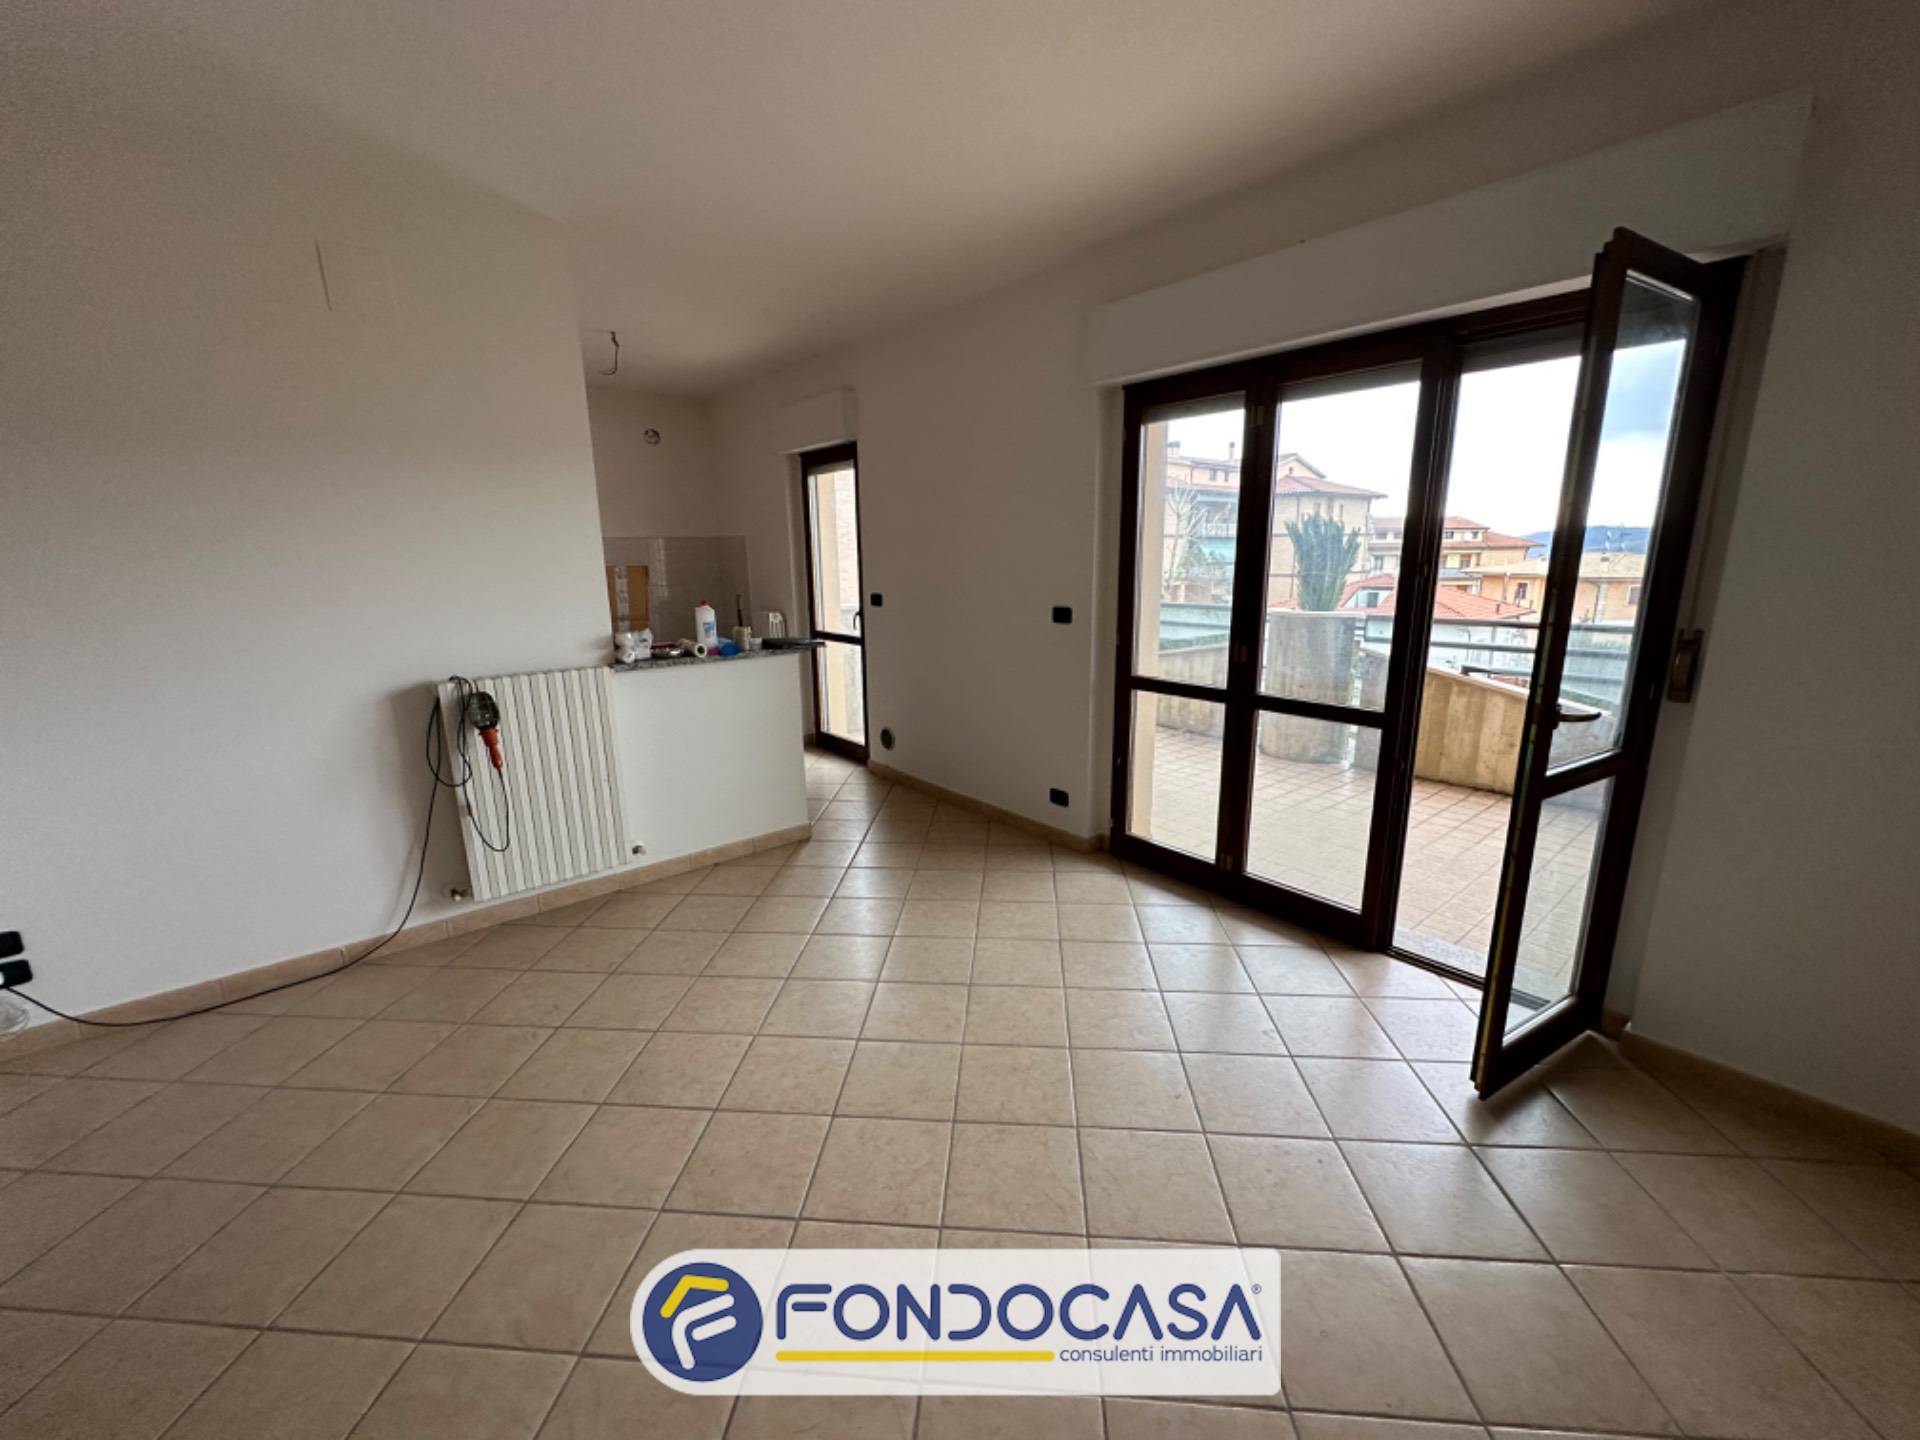 Appartamento in vendita a Castel di Lama, 5 locali, zona toni, prezzo € 158.000 | PortaleAgenzieImmobiliari.it